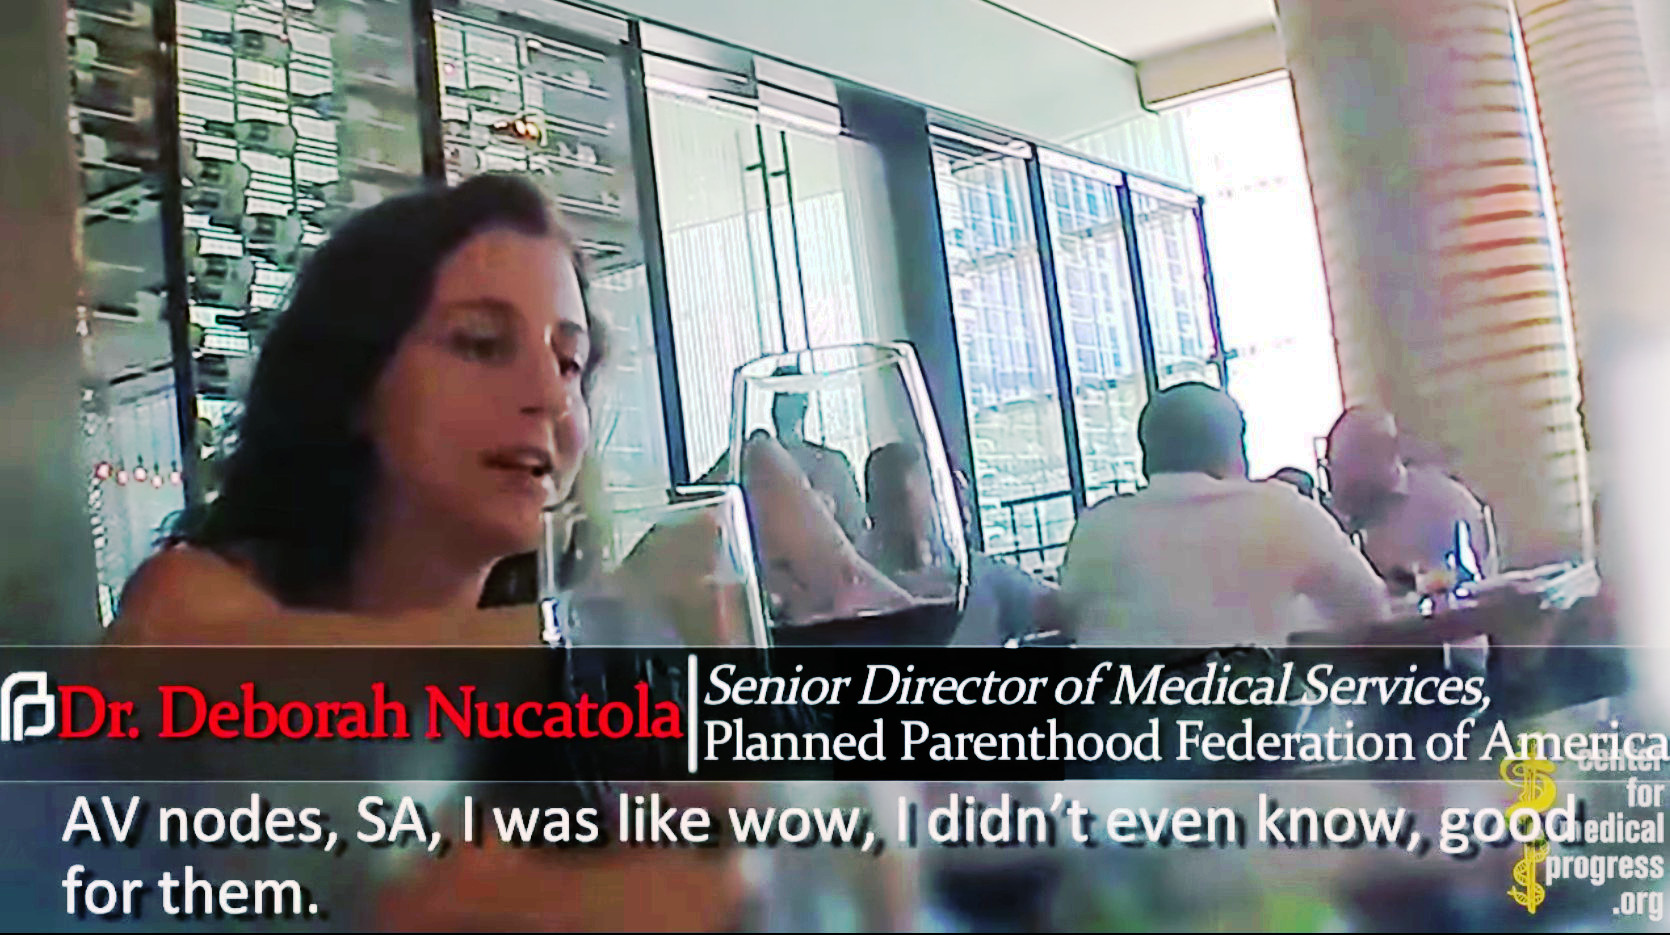 Enthüllungsvideo: So treibt größter US-Abtreibungs-Konzern illegal Handel mit Baby-Körperteilen!